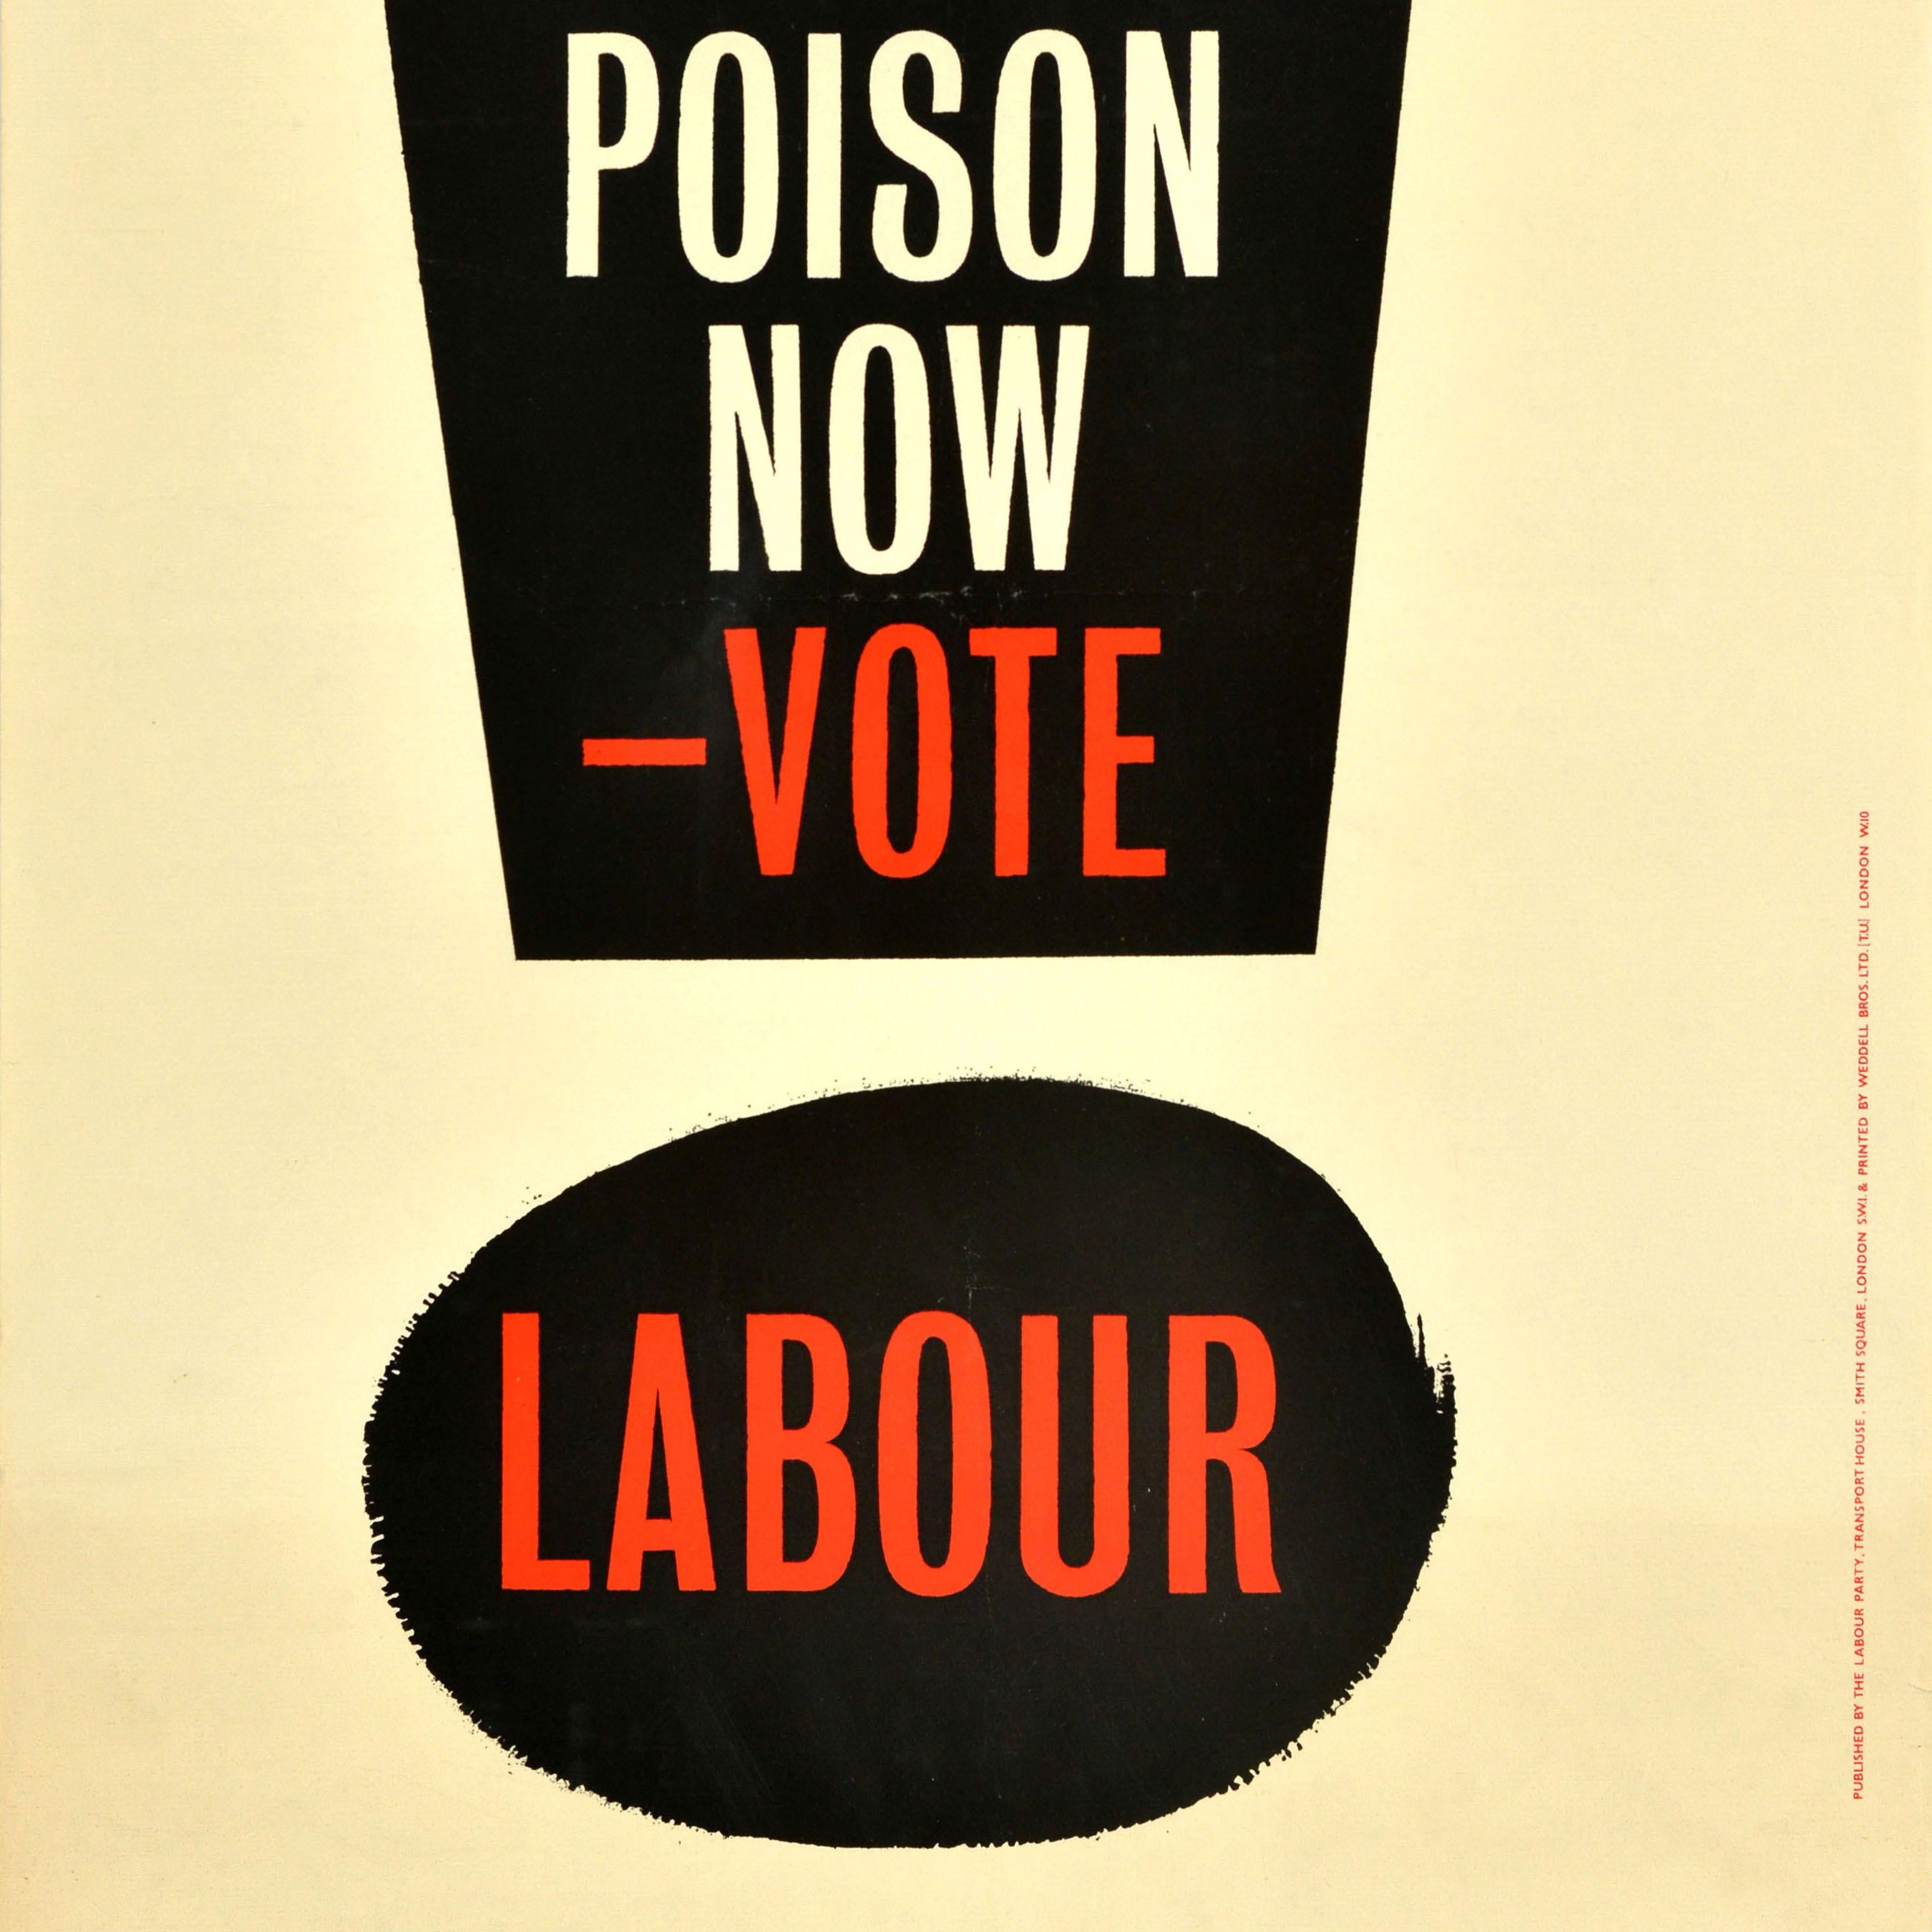 British Original Vintage Election Propaganda Poster Stop H Bomb Poison Vote Labour Party For Sale